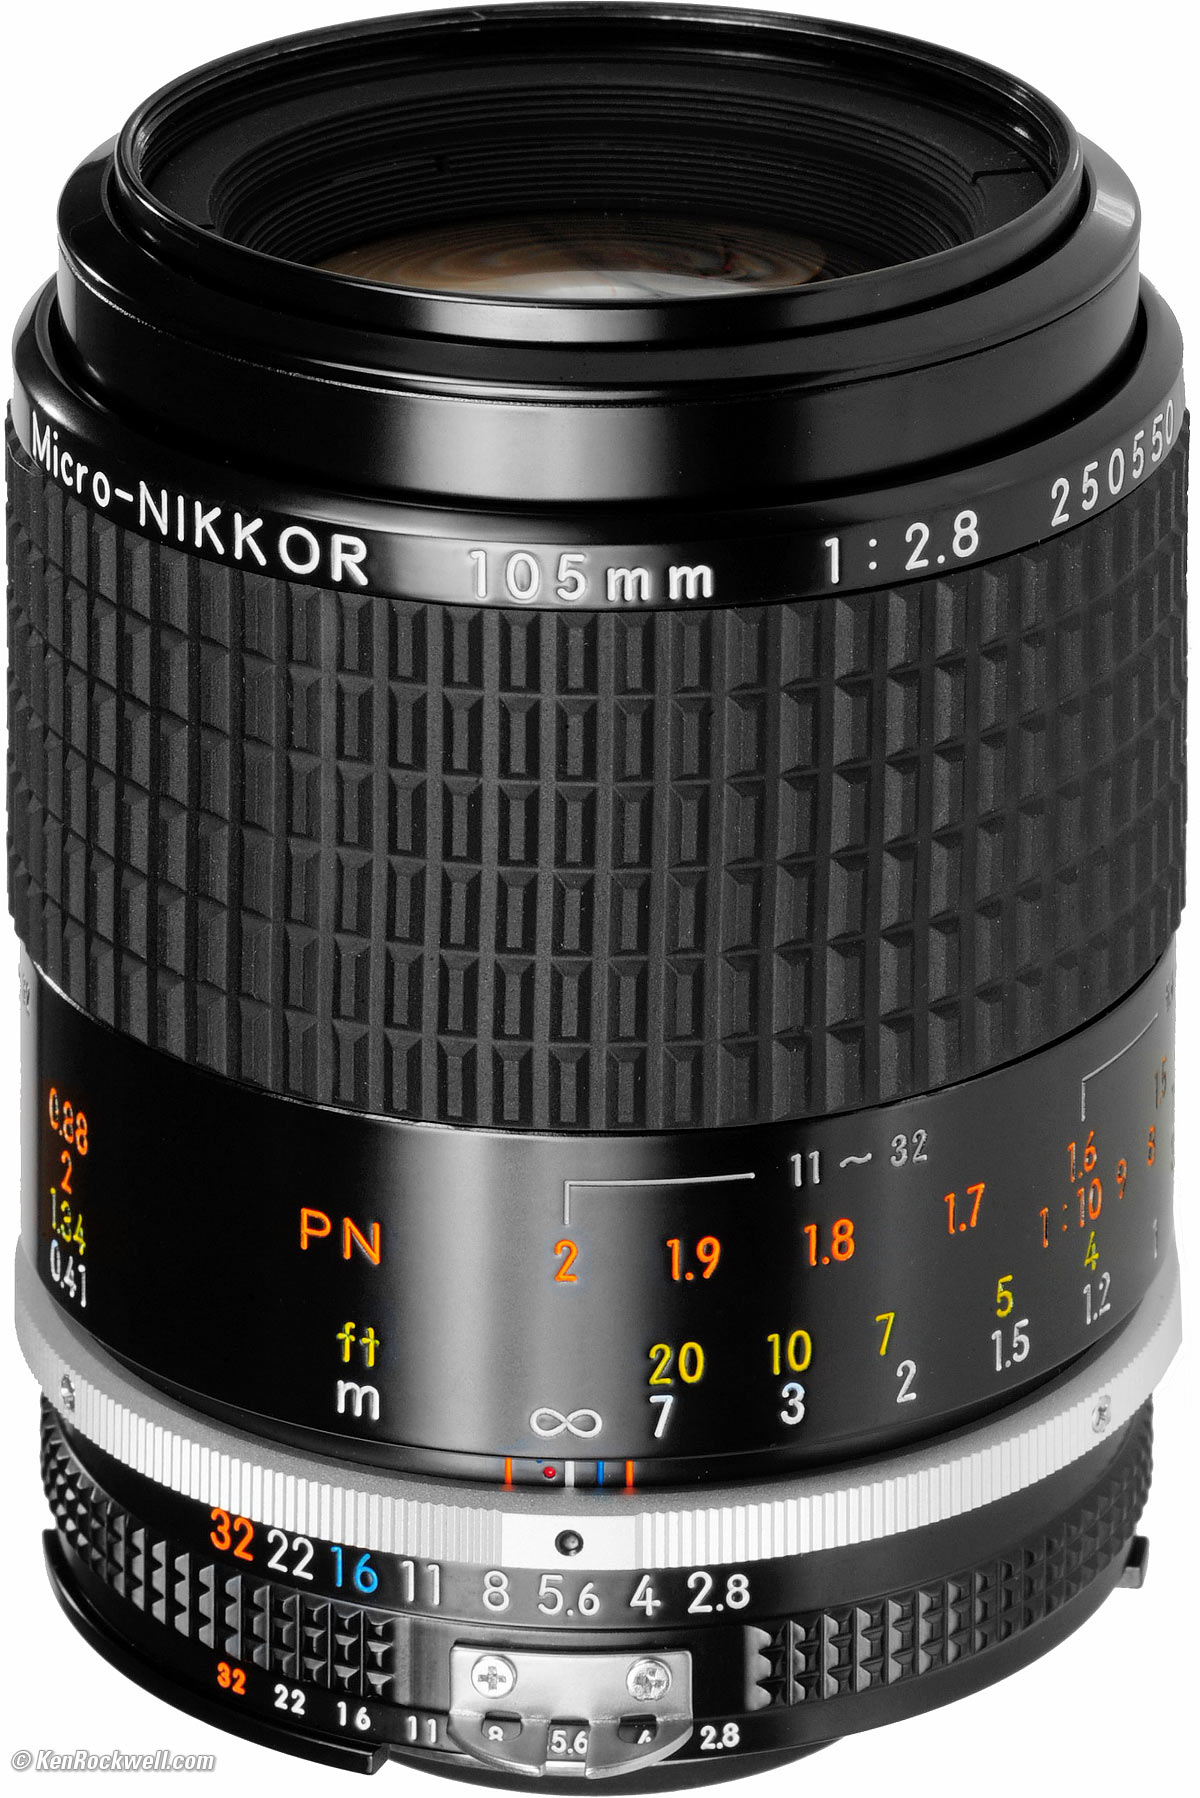 Nikon 105mm f/2.8 AI-s Micro-NIKKOR (1983-today)